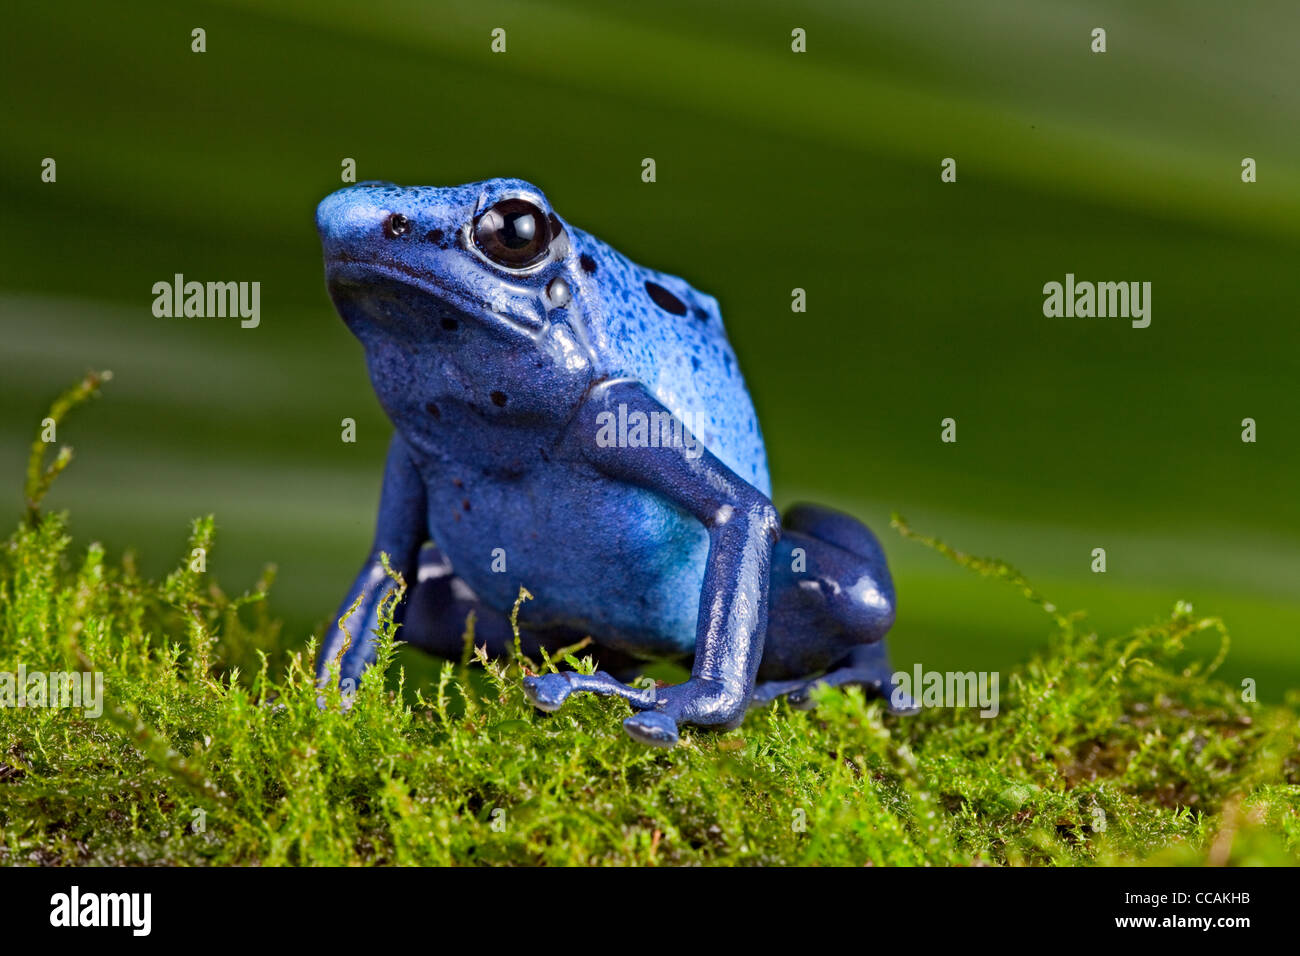 blue poison dart frog Dendrobates azureus, Suriname South America amazon rain forest Stock Photo